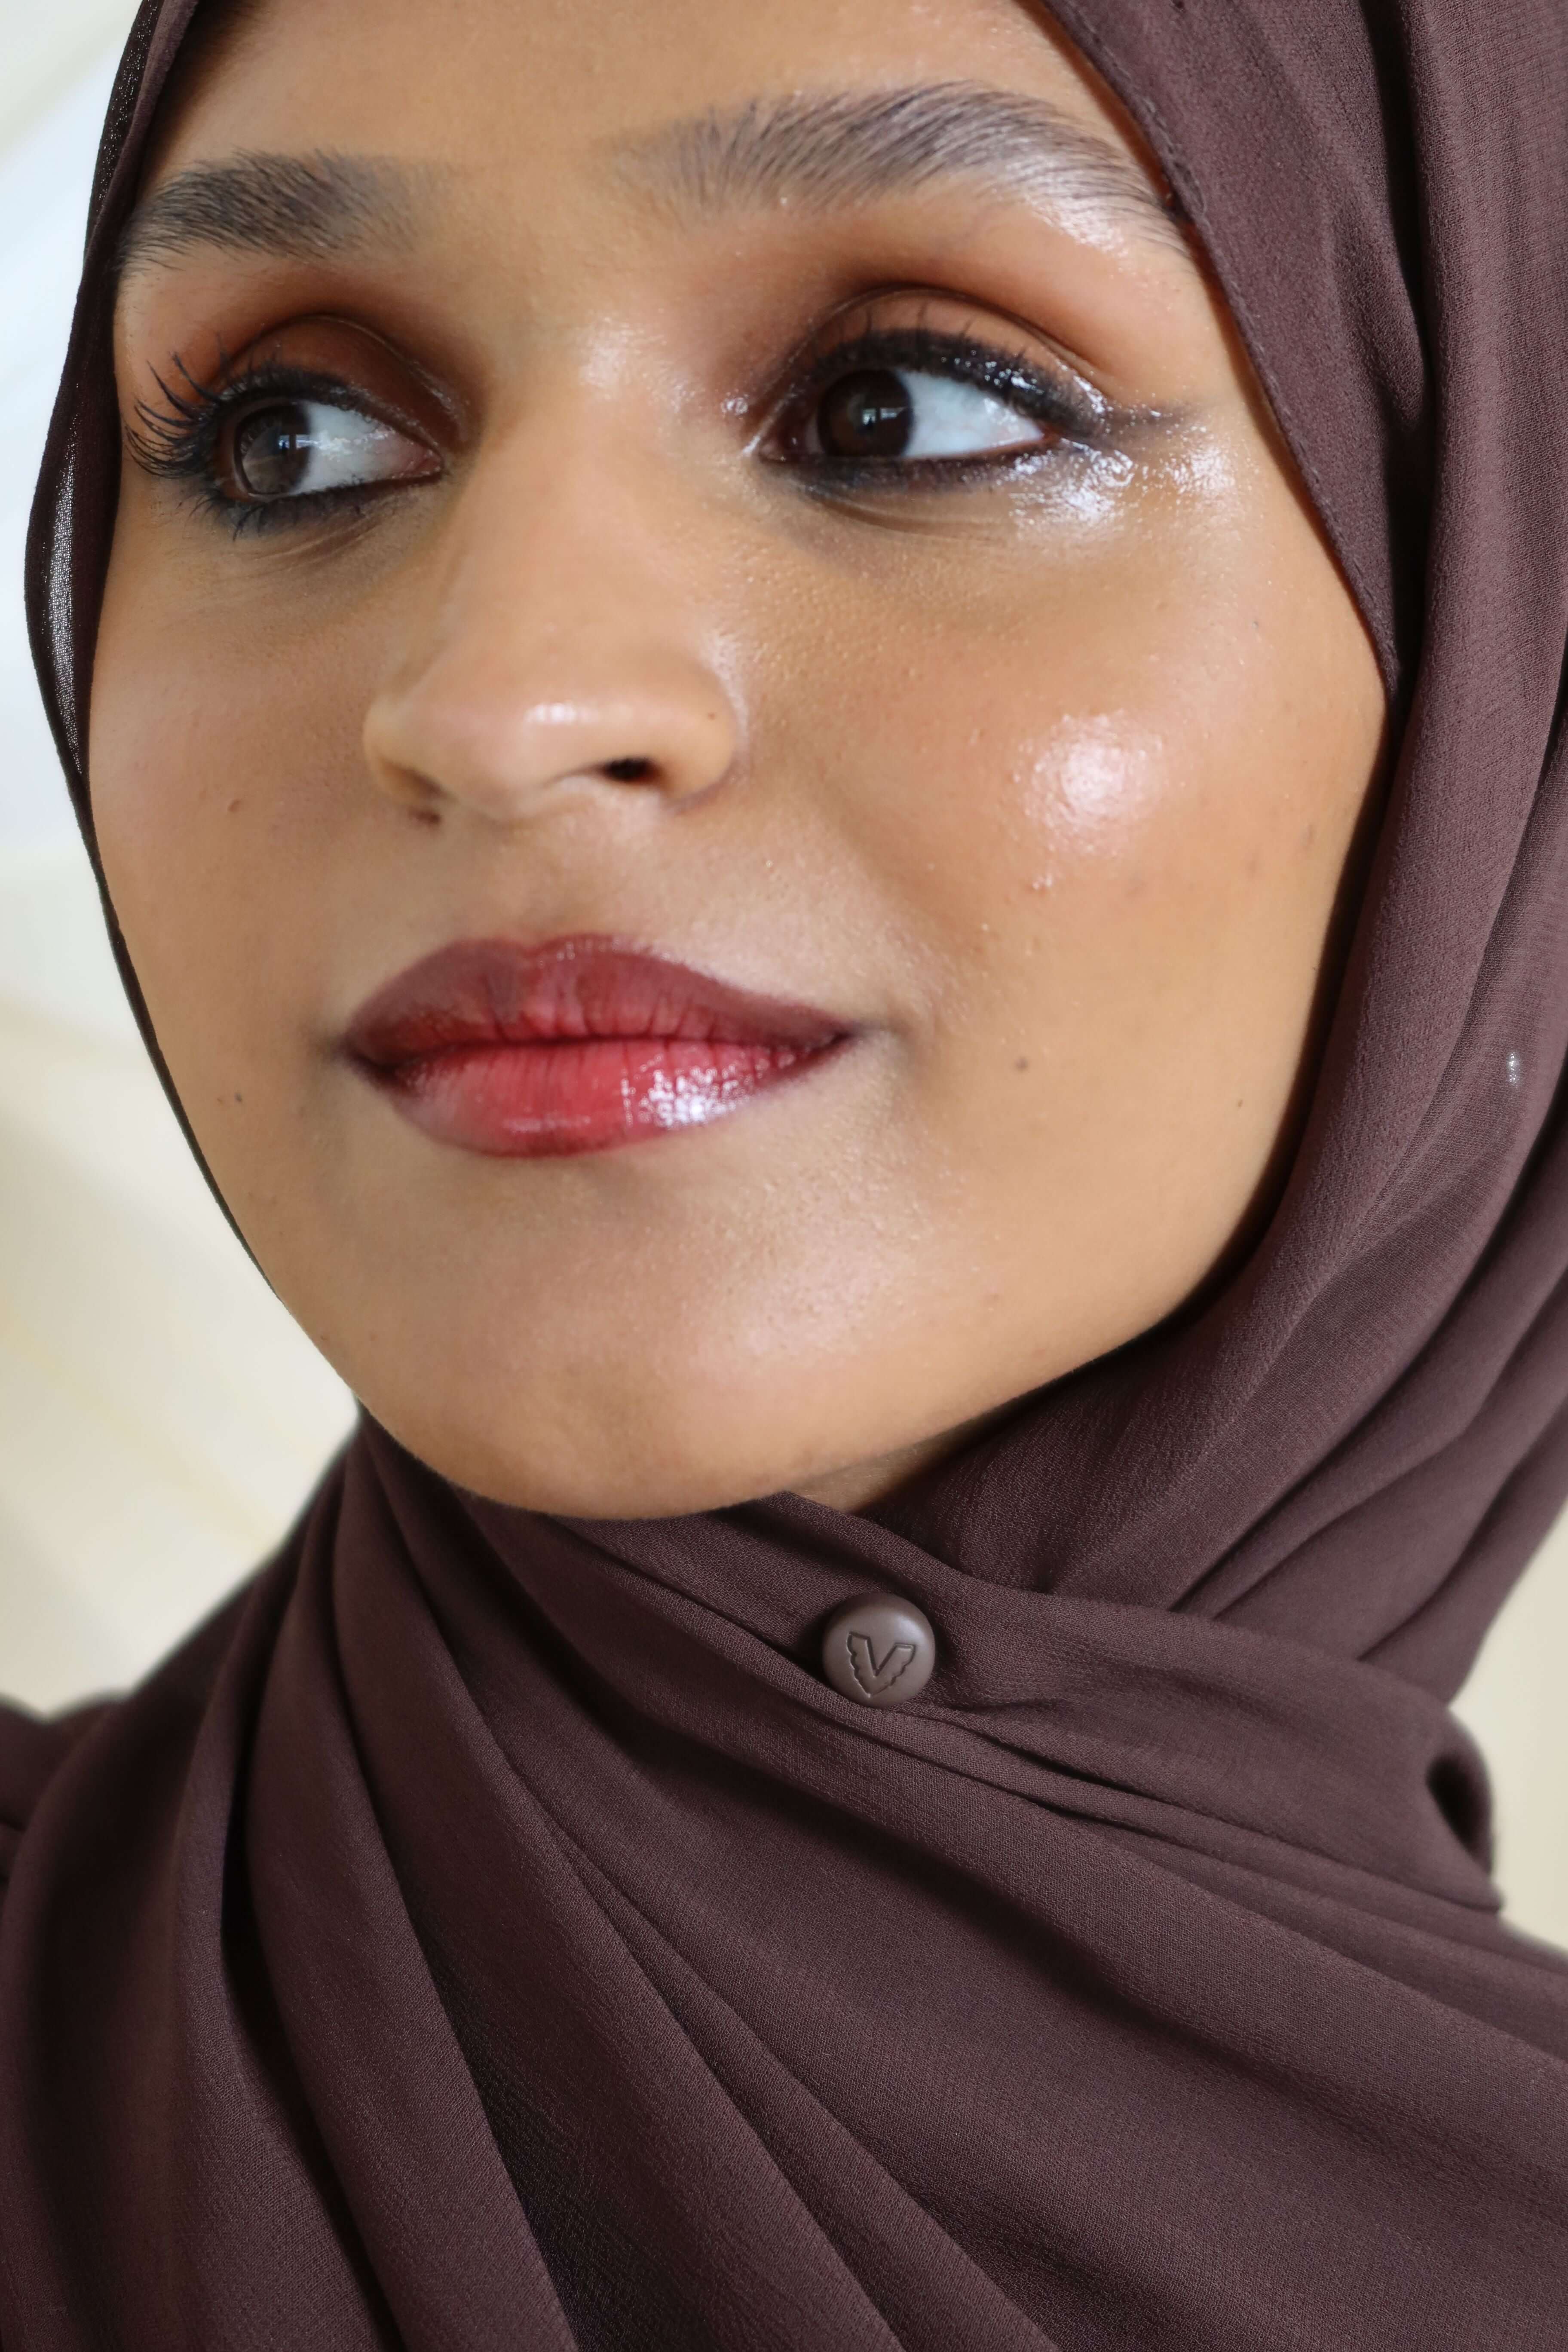 gold hijab magnet – Latifa Label